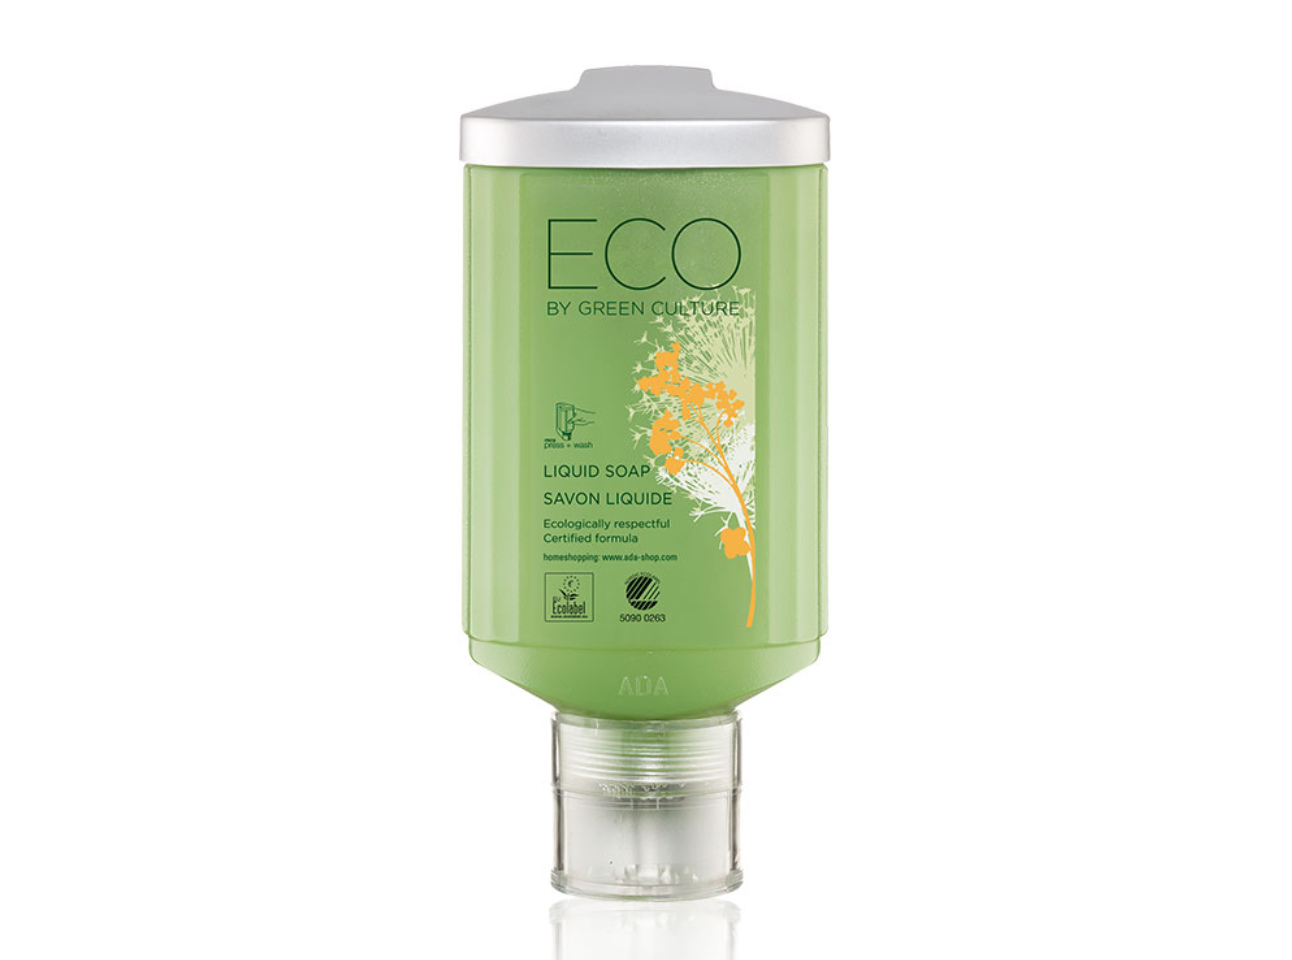 Eco by Green Culture Flüssigseife - press+wash, 300ml